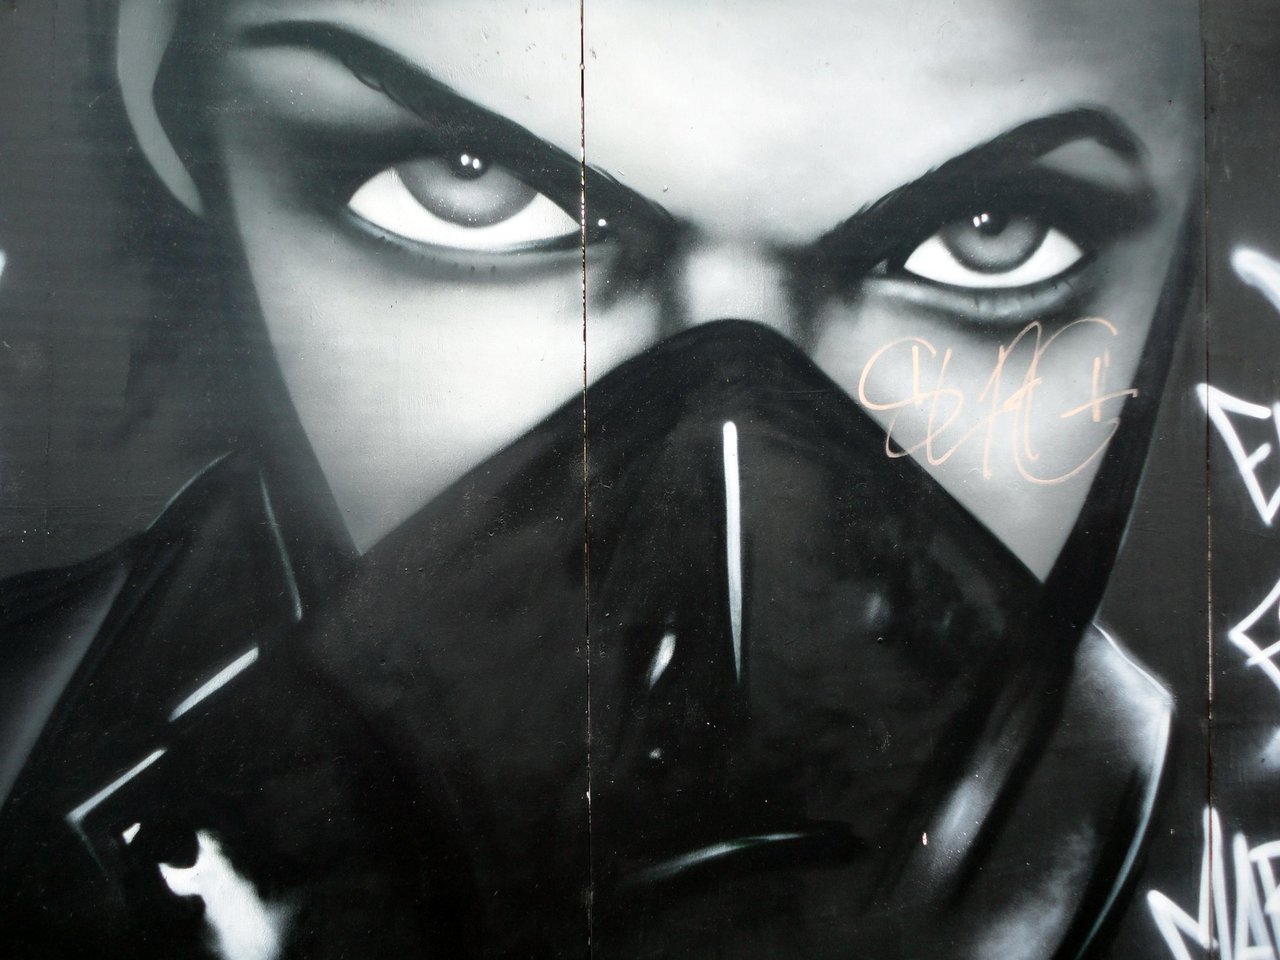 Mural by Omega

#graffiti #streetart #art #arte #mural #Digbeth #eyes http://t.co/BN6gfTBpKK